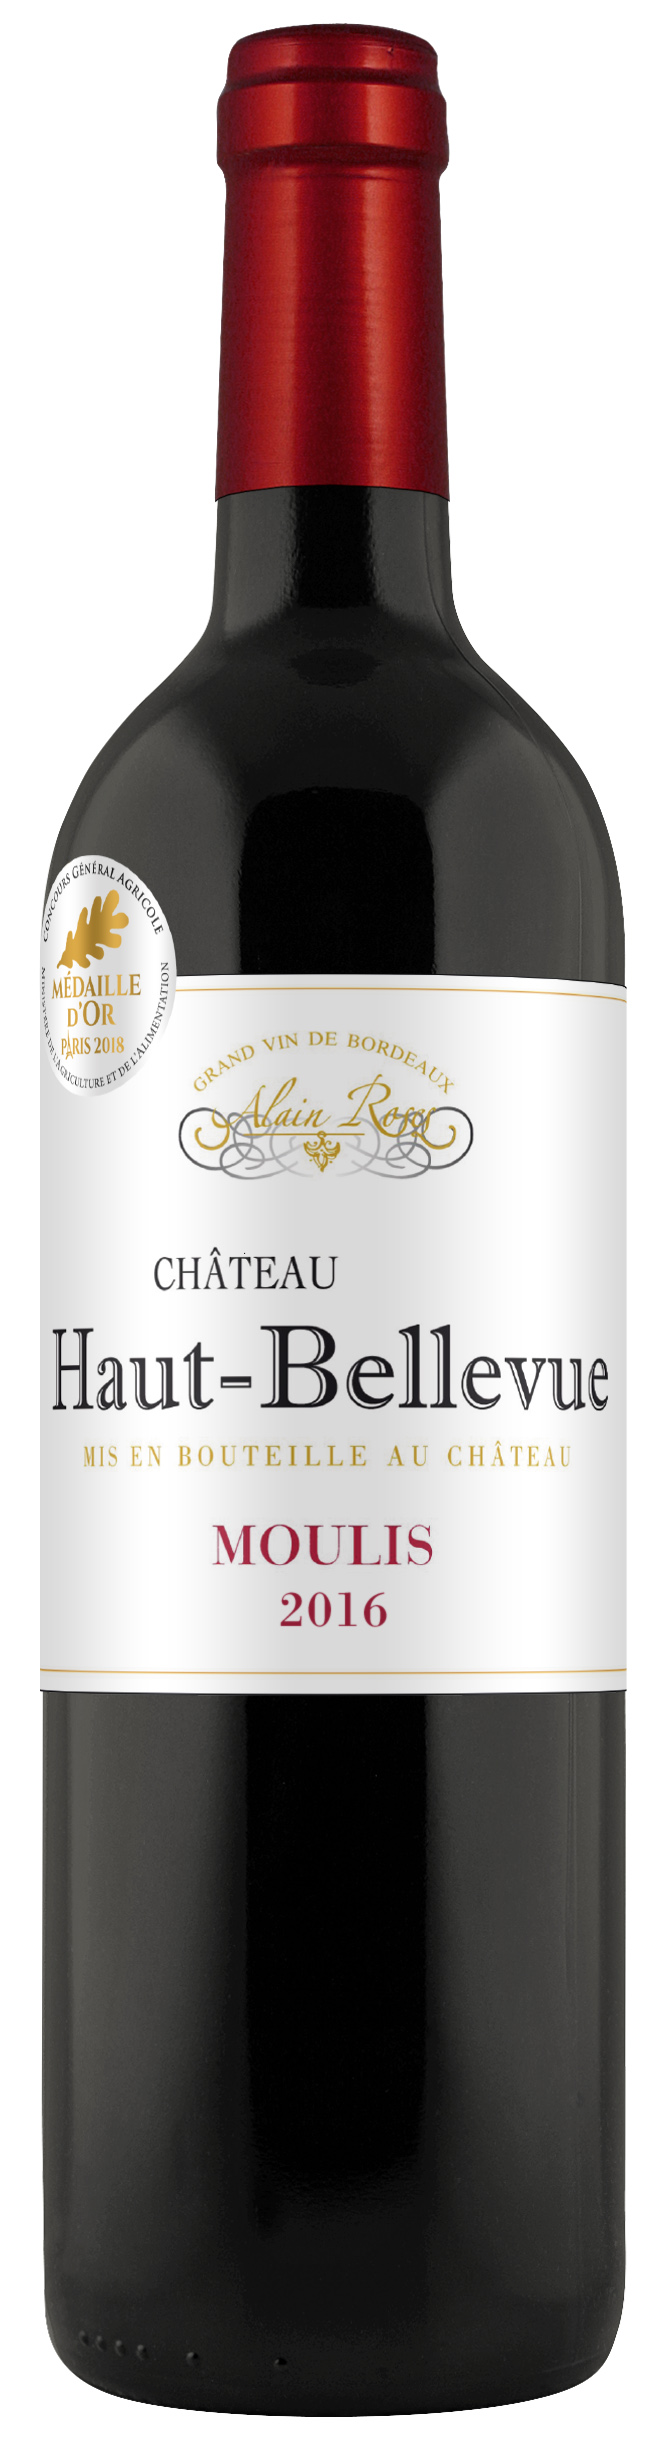 Château Haut-Bellevue 2016 Moulis